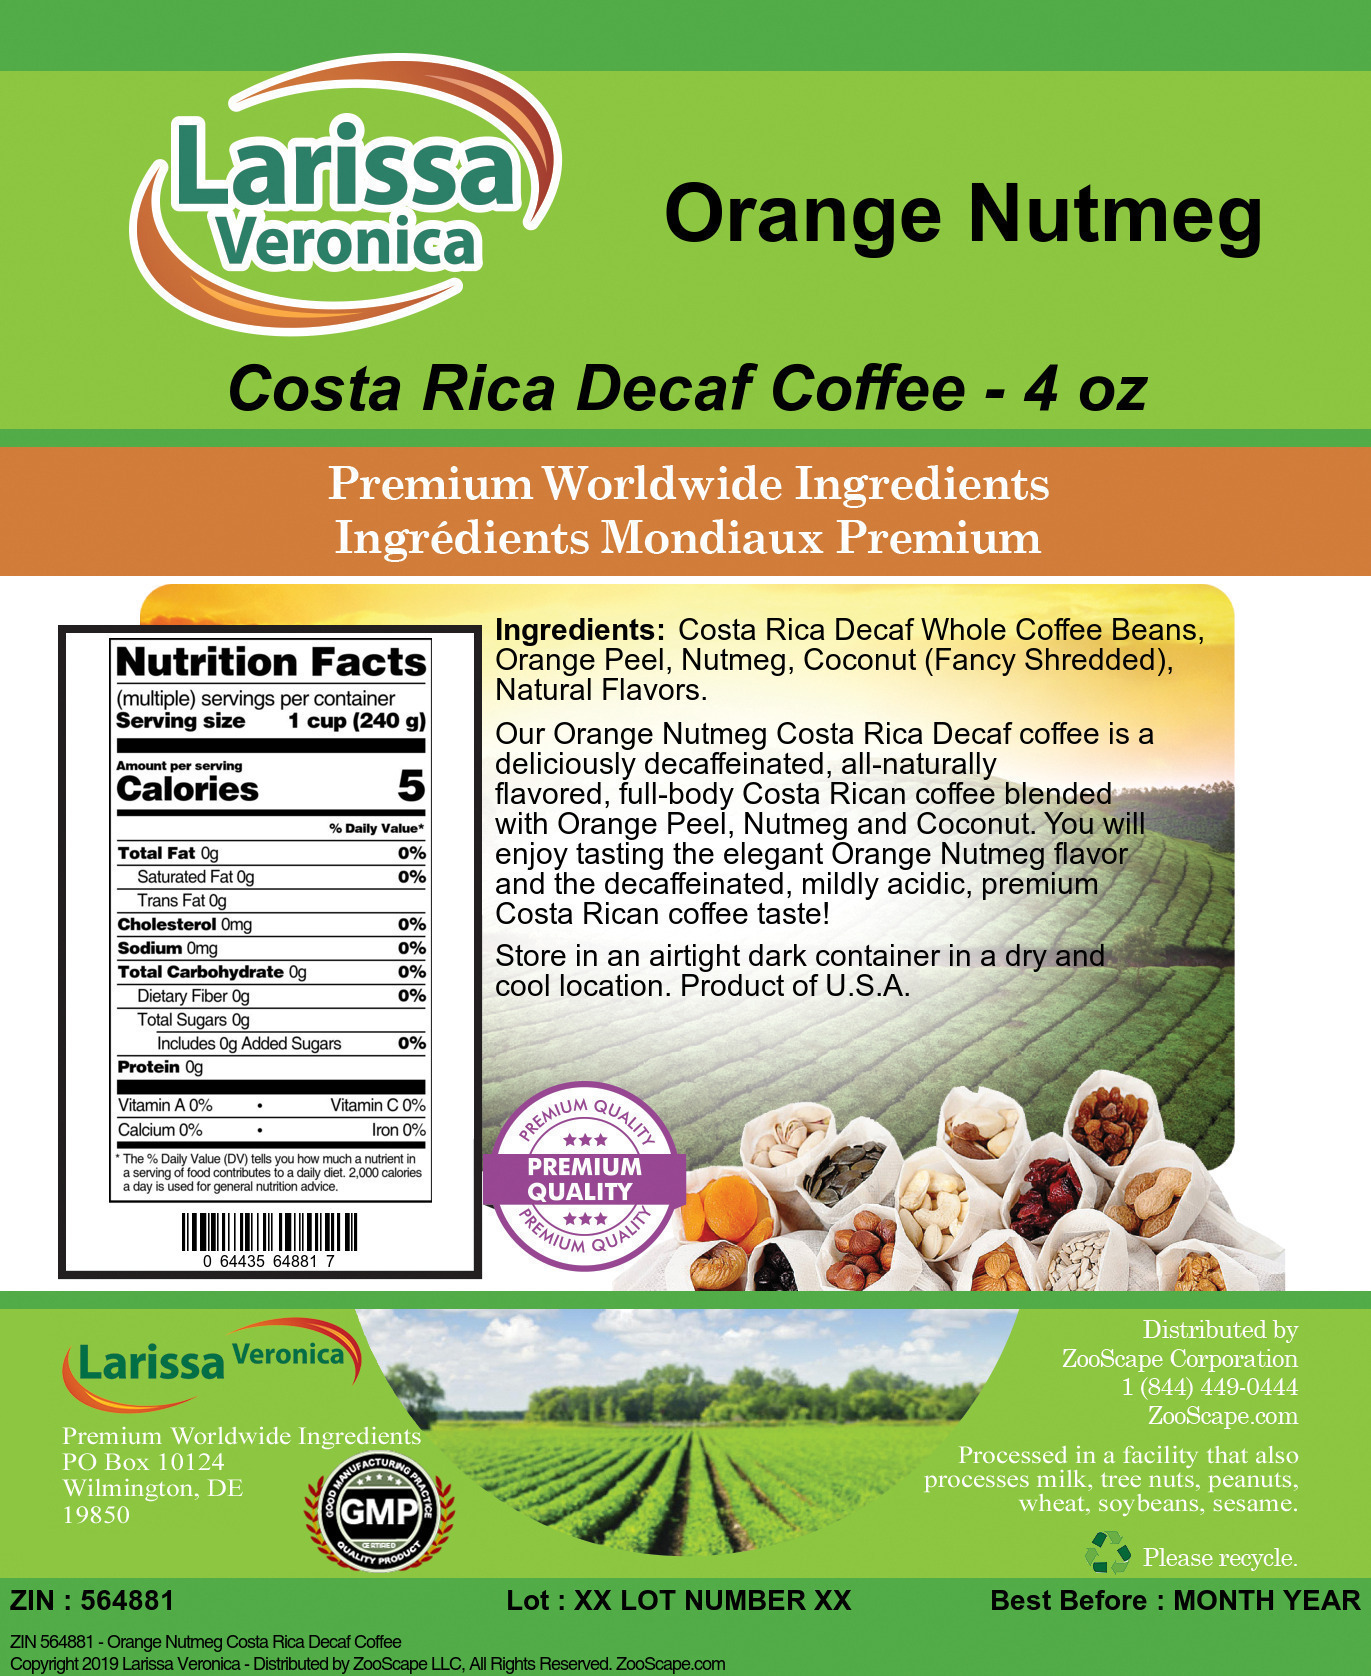 Orange Nutmeg Costa Rica Decaf Coffee - Label